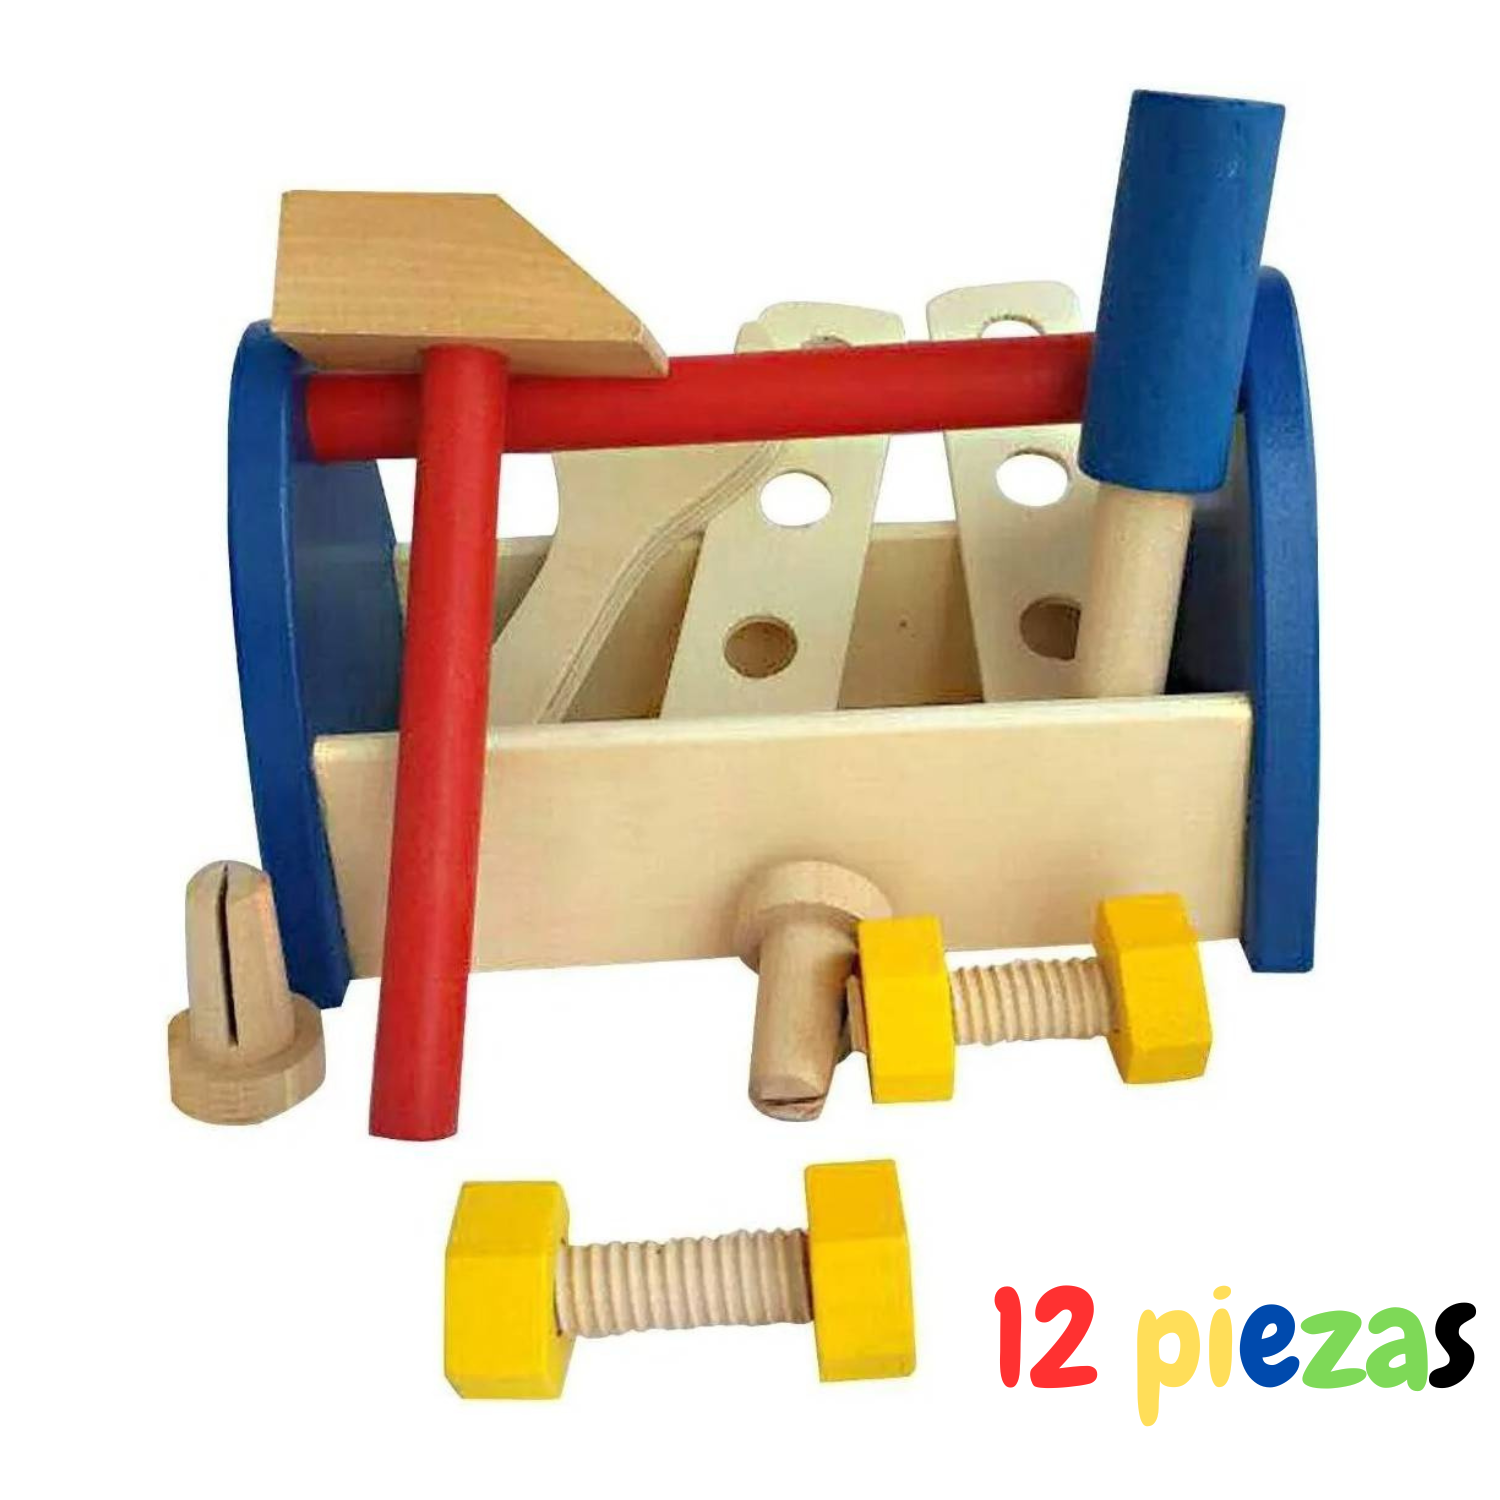 Caja Set de herramientas de madera para niños – vitrinababy